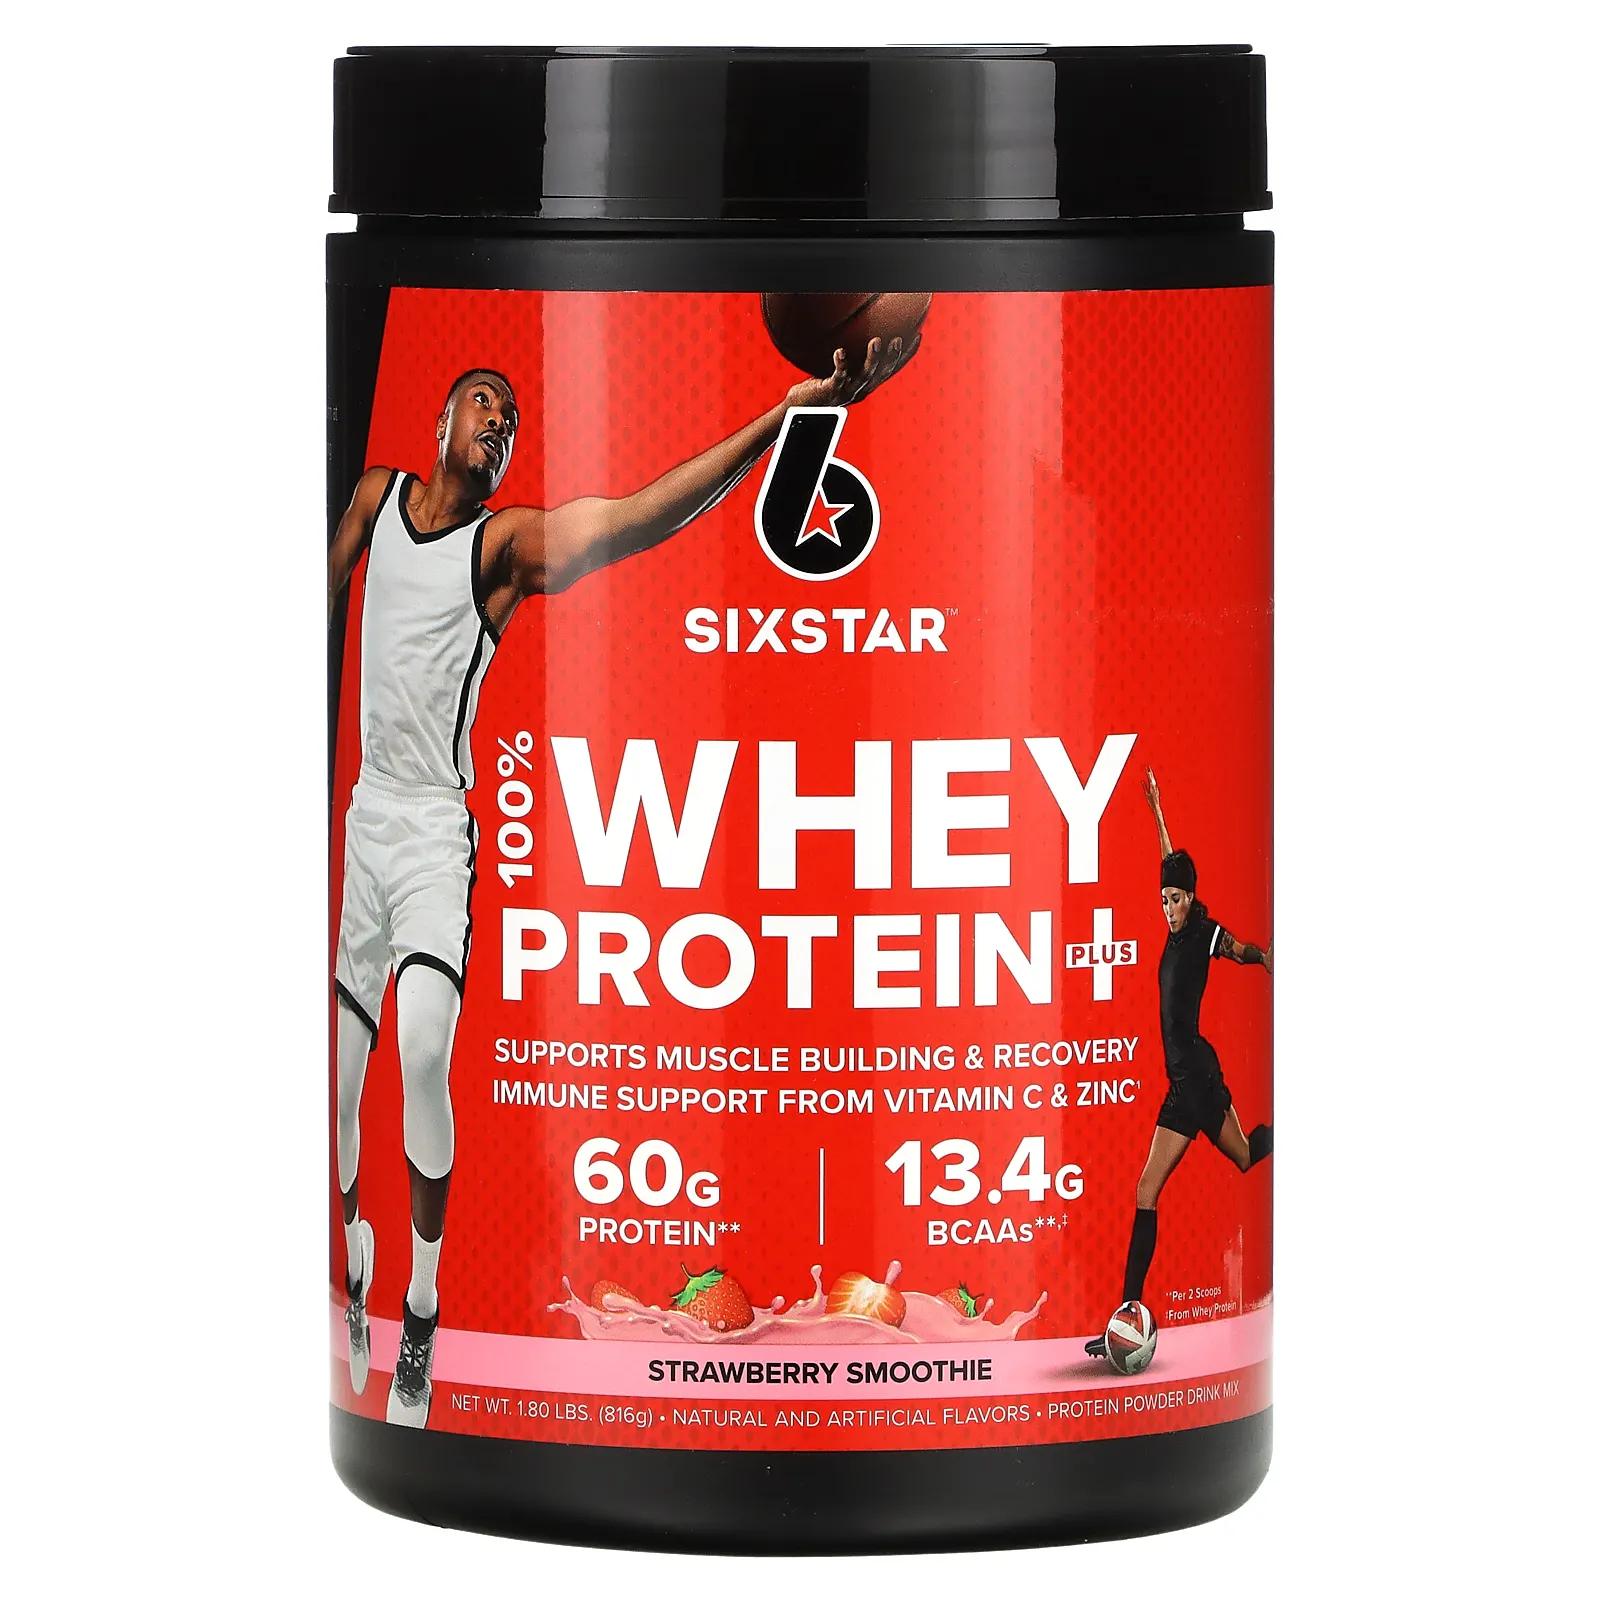 SIXSTAR 100% Whey Protein Plus клубничный смузи 816 г (1,8 фунта) sixstar elite series 100% whey protein plus strawberry smoothie 1 8 lbs 816 g